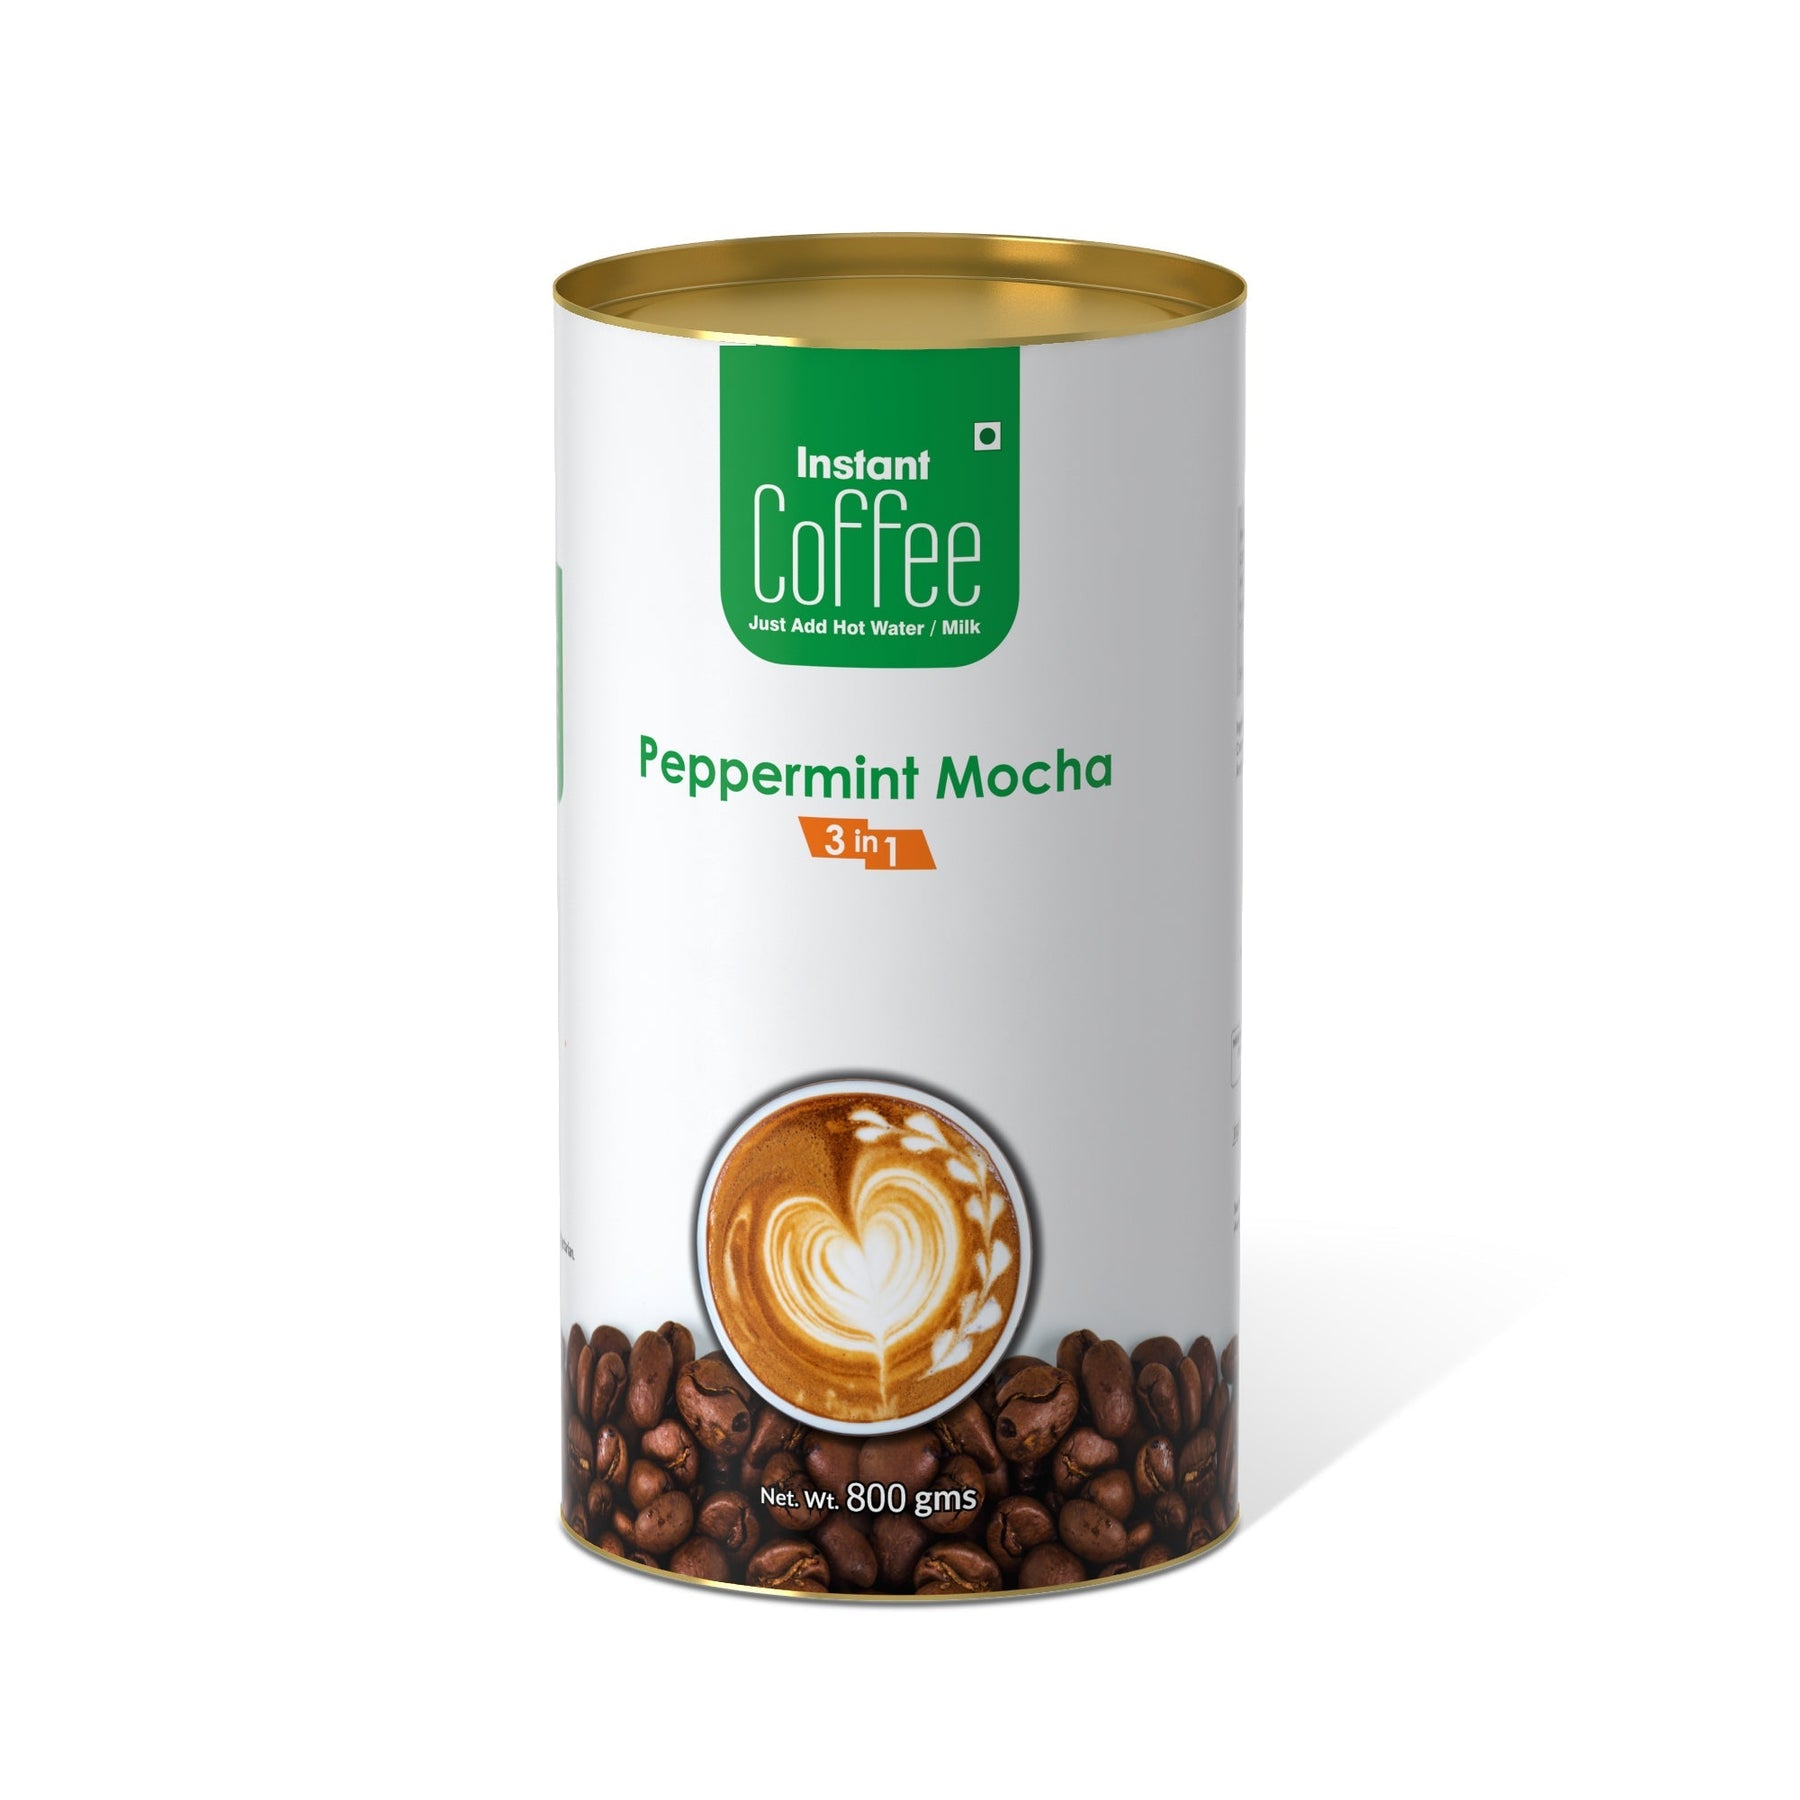 Peppermint Mocha Instant Coffee Premix (3 in 1) - 800 gms